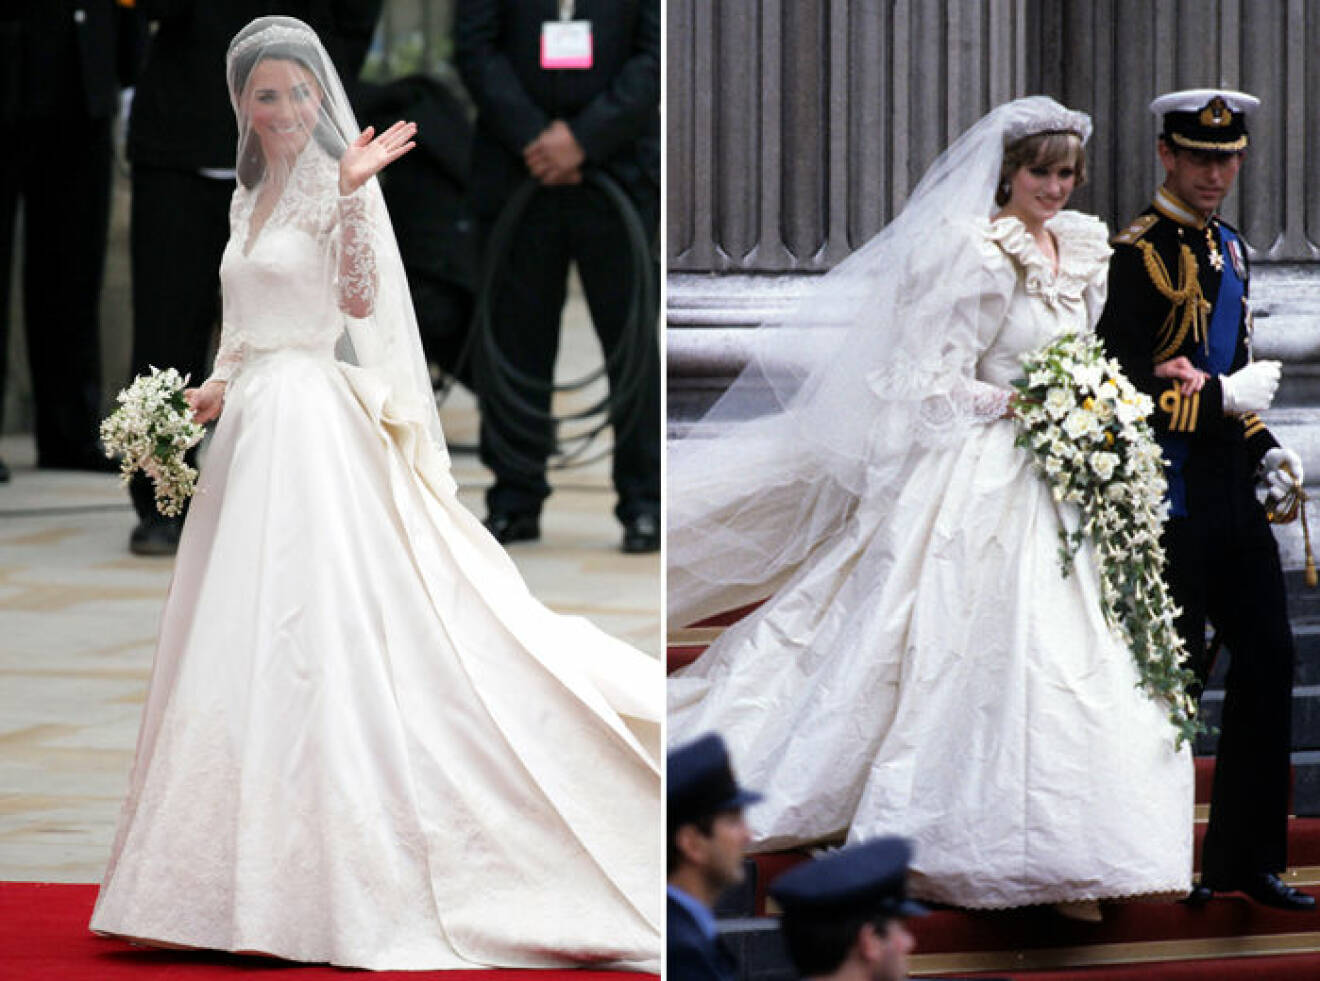 Kate Middleton bar en bröllopsklänning från Sarah Burton/Alexander McQueen och prinsessan Dianas bröllopsklänning designades av Elizabeth Emanuel.